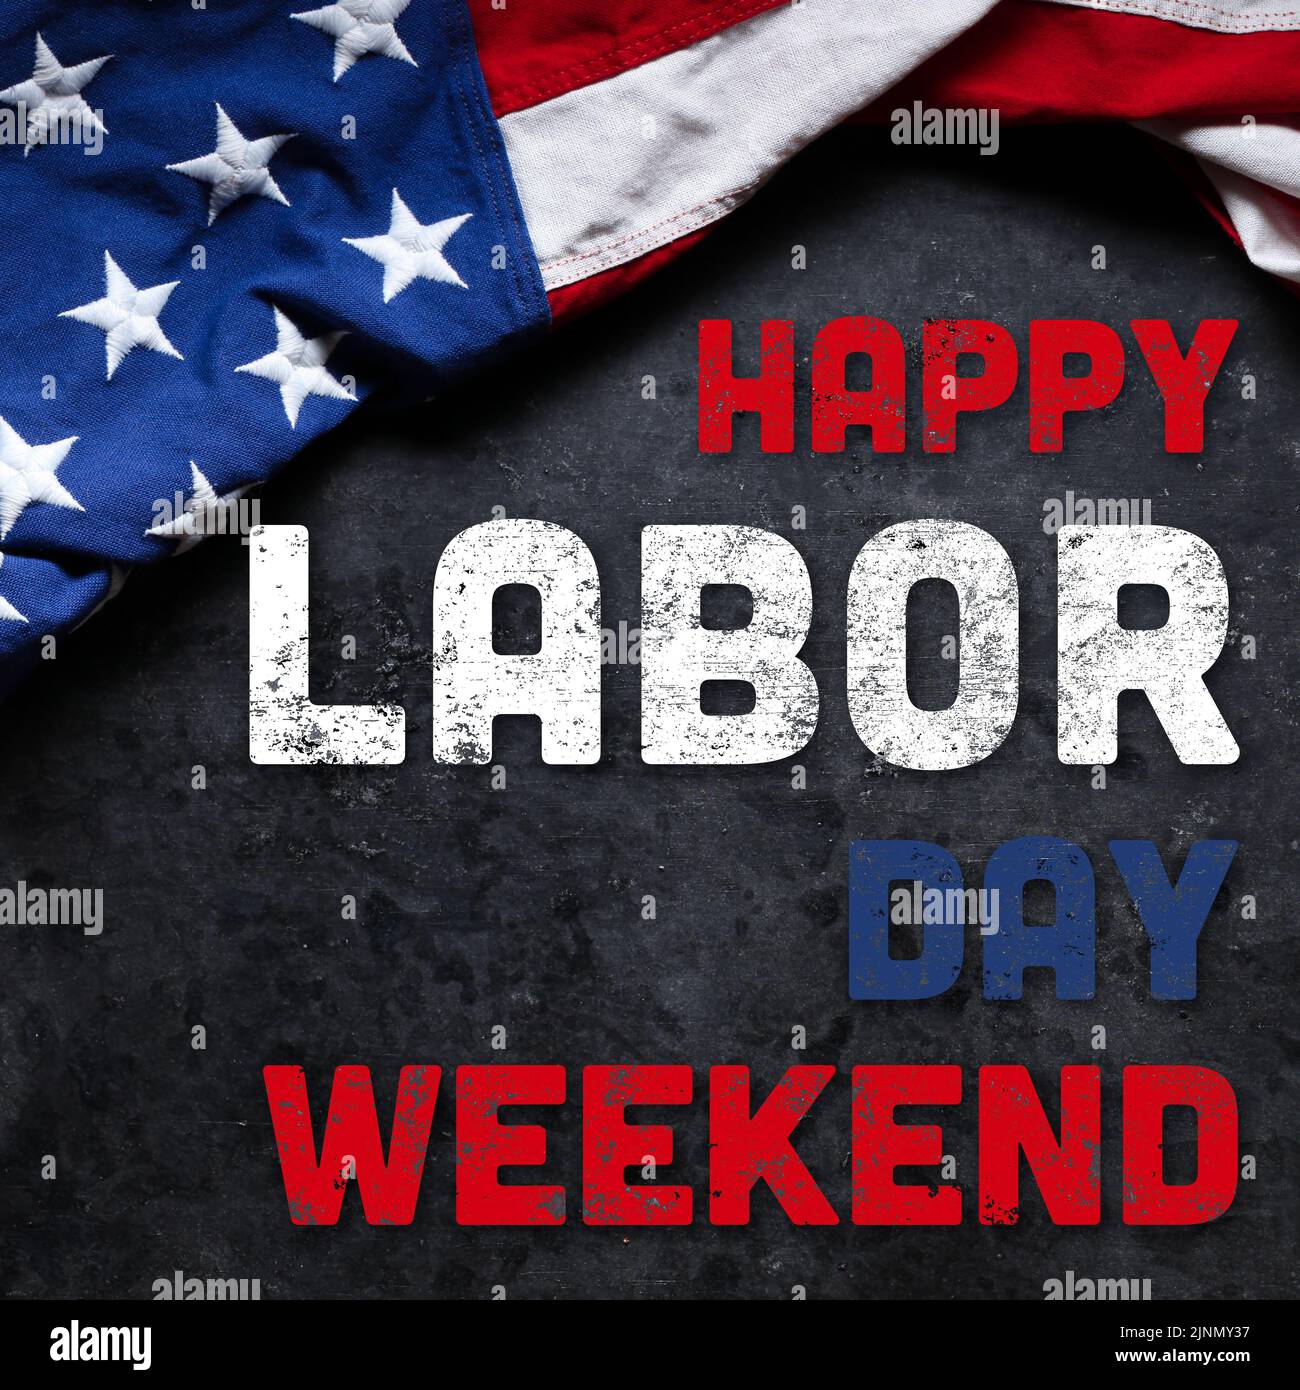 US-amerikanische Flagge auf abgenutztem weißen Holzhintergrund. Zur Feier des USA Labor Day. Mit Happy Labor Day Weekend Text. Stockfoto